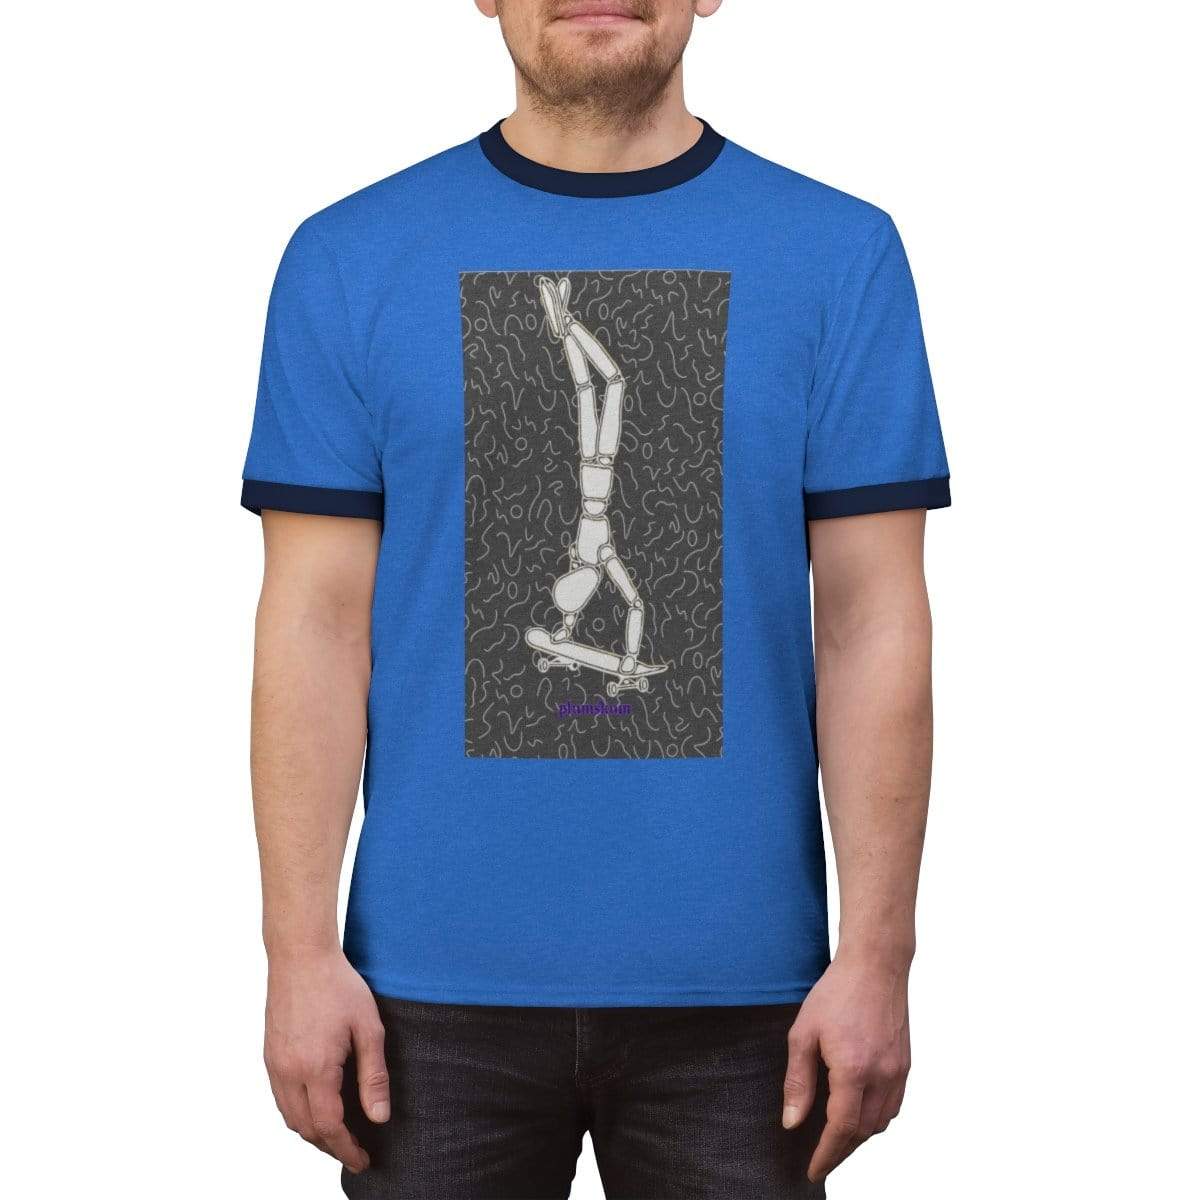 Printify T-Shirt Plumskum Skater Unisex Ringer Tee